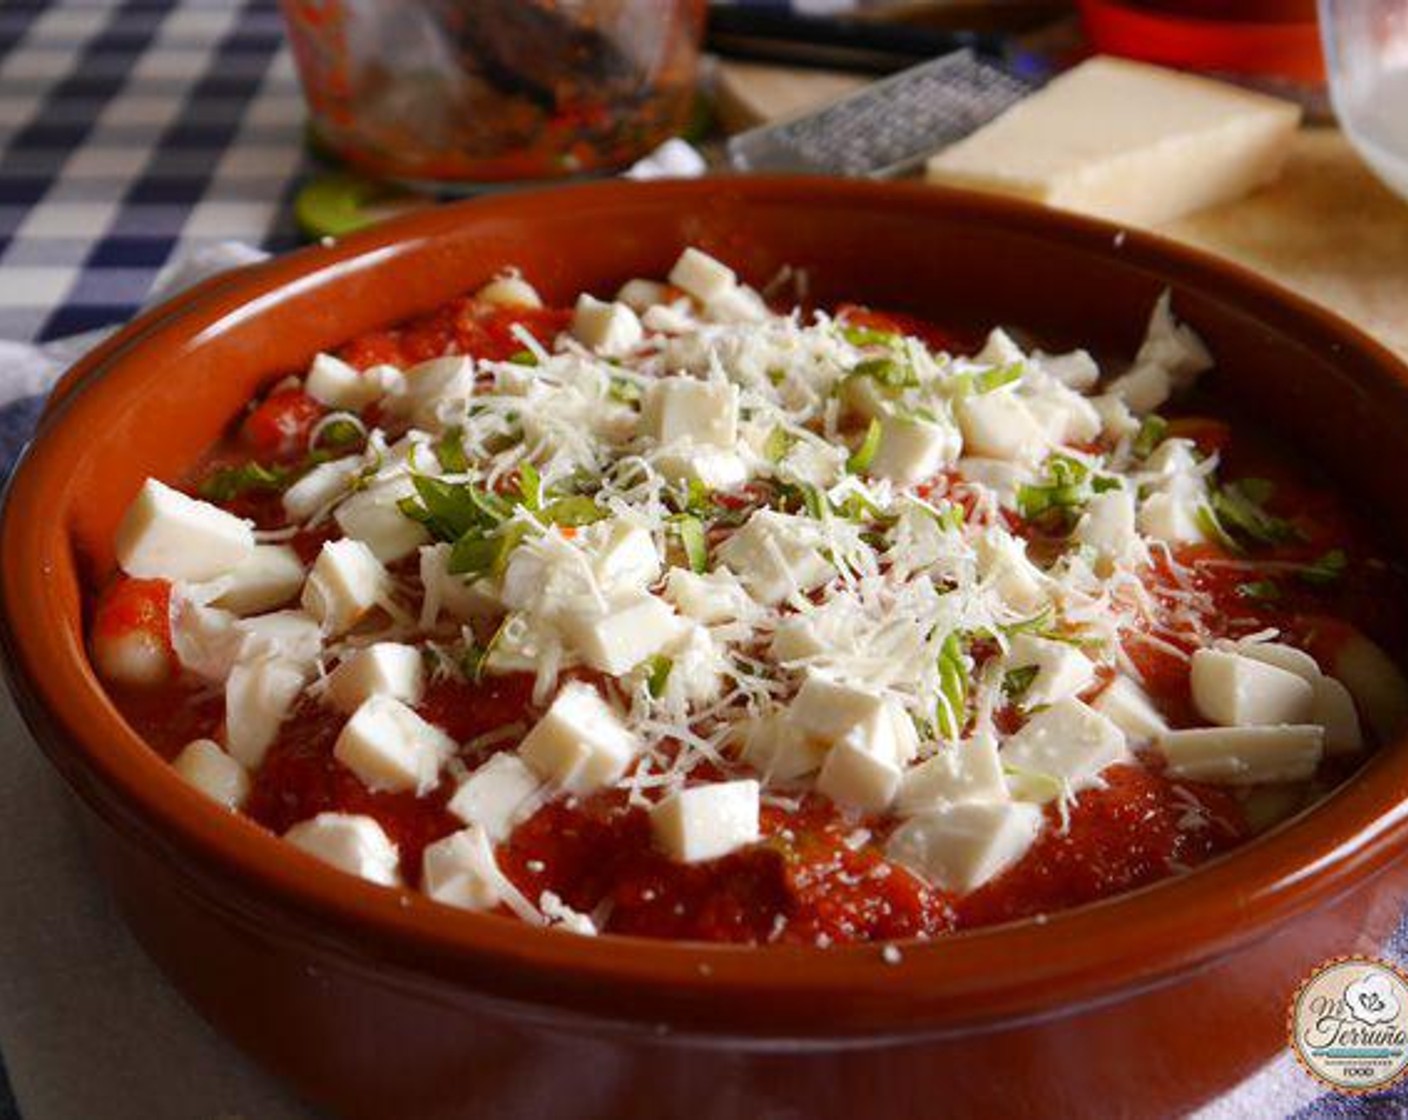 Schritt 4 In einer Auflaufform erst eine Schicht Tomatensauce (435 g) dann eine Schicht Gnocchi, eine Schicht Mozzarella, gehackten Basilikum (wenig), Salz (wenig), Pfeffer (wenig), Knoblauch (2 Zehen) und etwas geriebenen Parmigiano (200 g) geben.